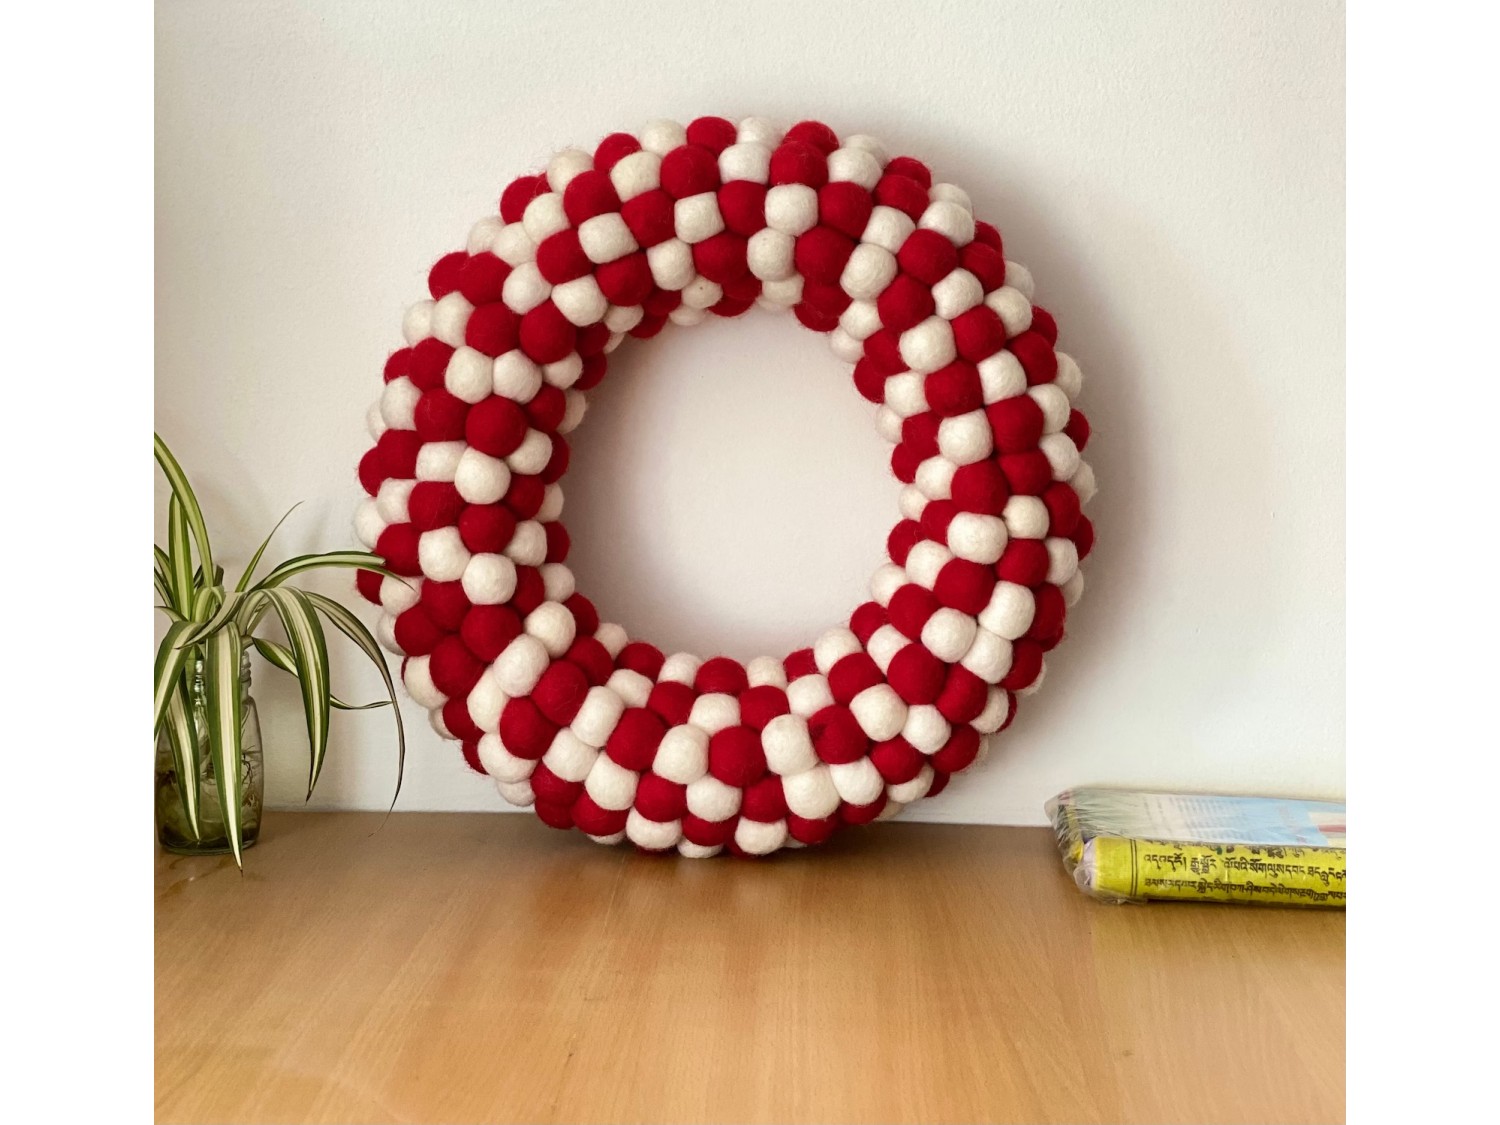 Buy Wool Felt Ball Red & White Wreath - Felt and Yarn